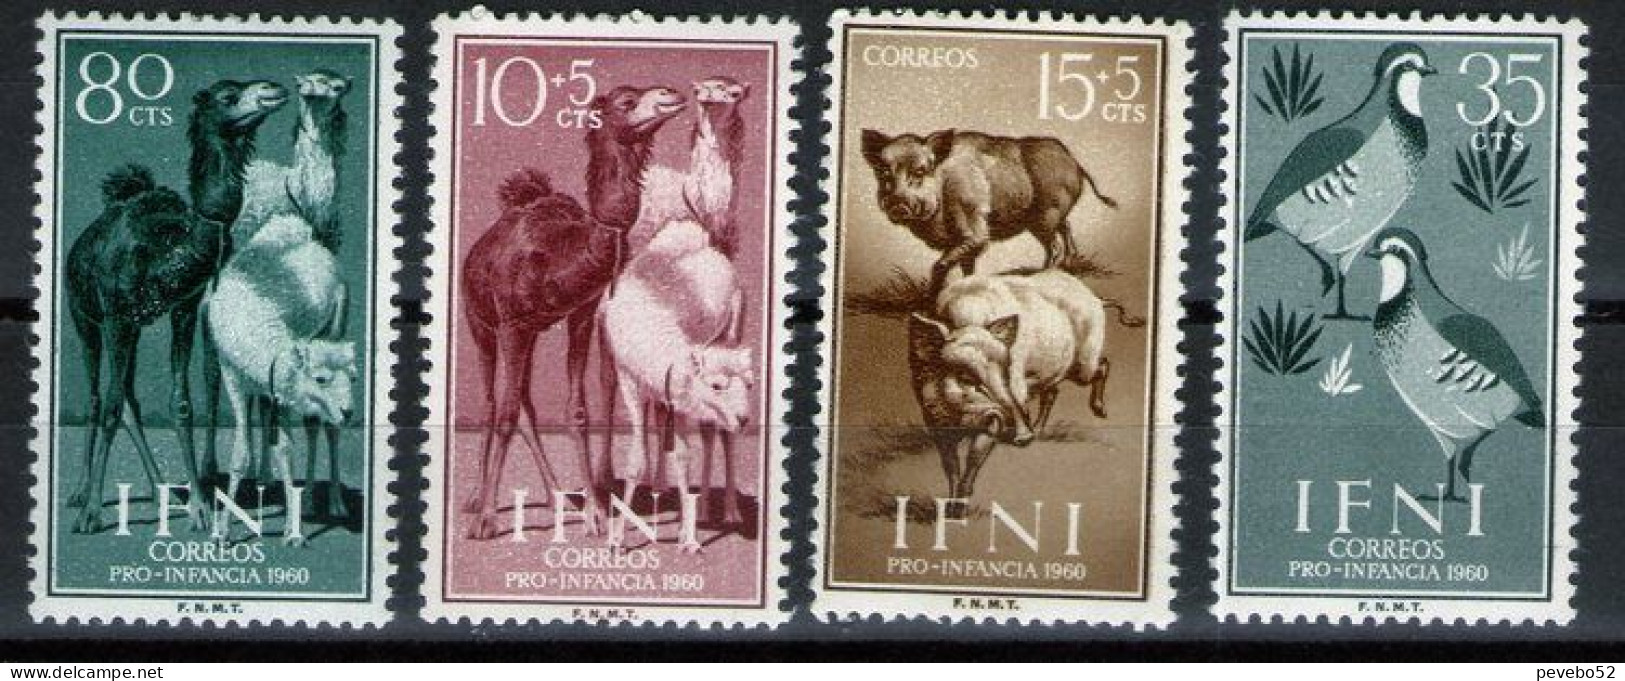 SPAINISH IFNI 1960 - Child Welfare - Animals MNH - Ifni